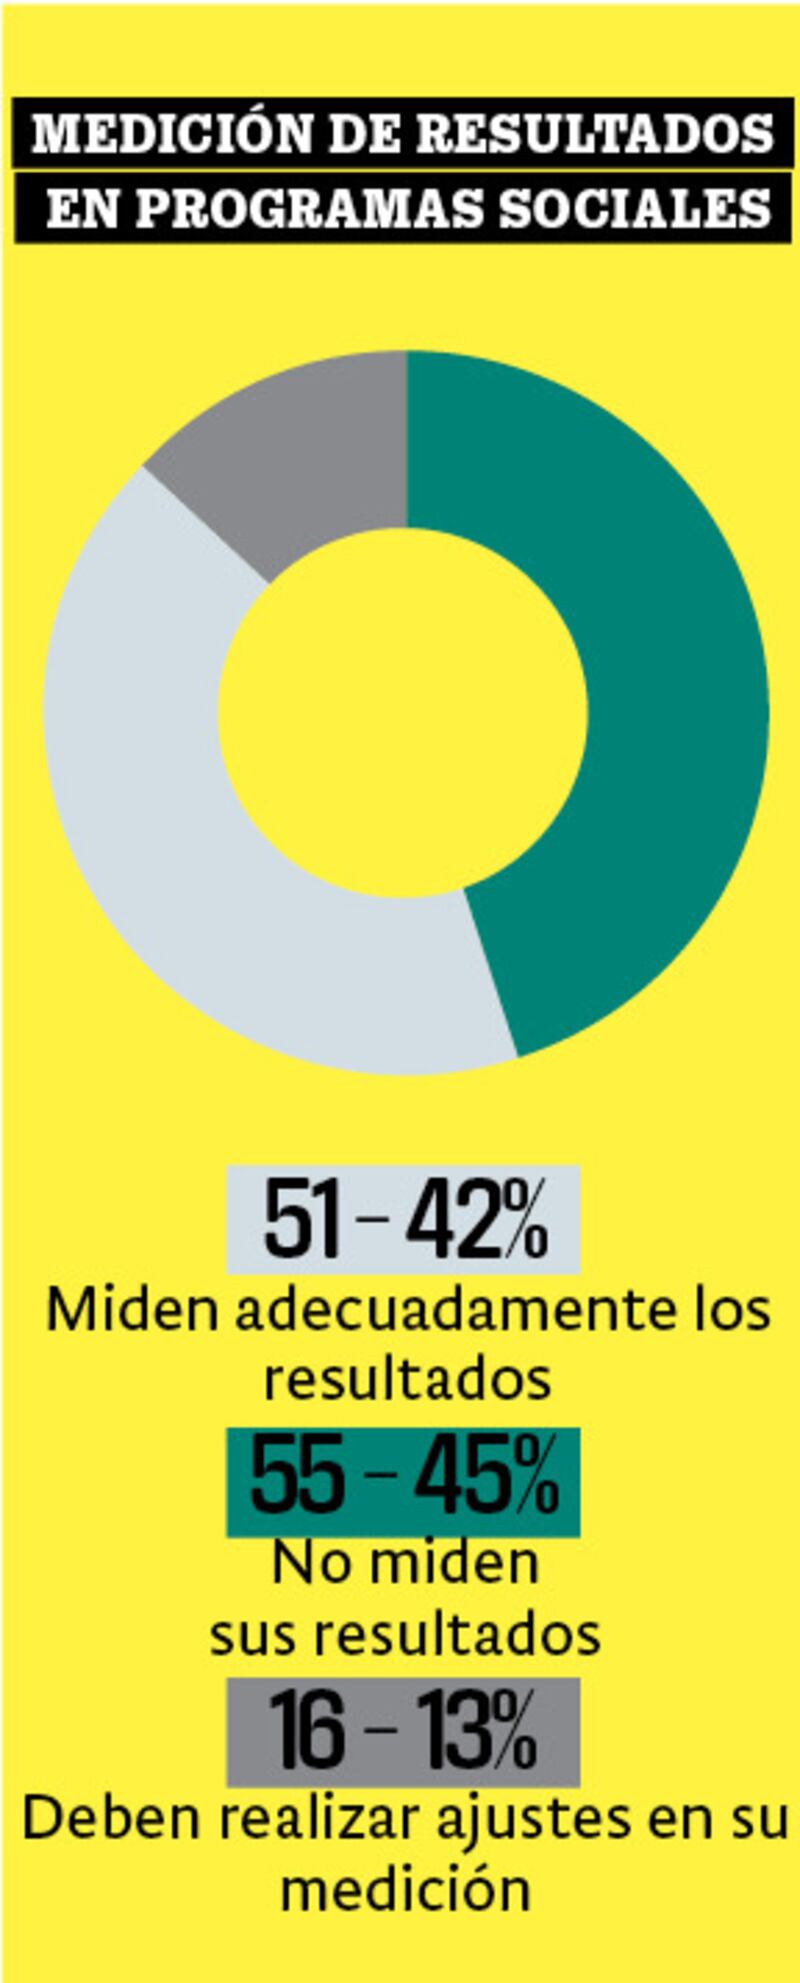 Programas sociales en México tienen defectuosa medición de resultados